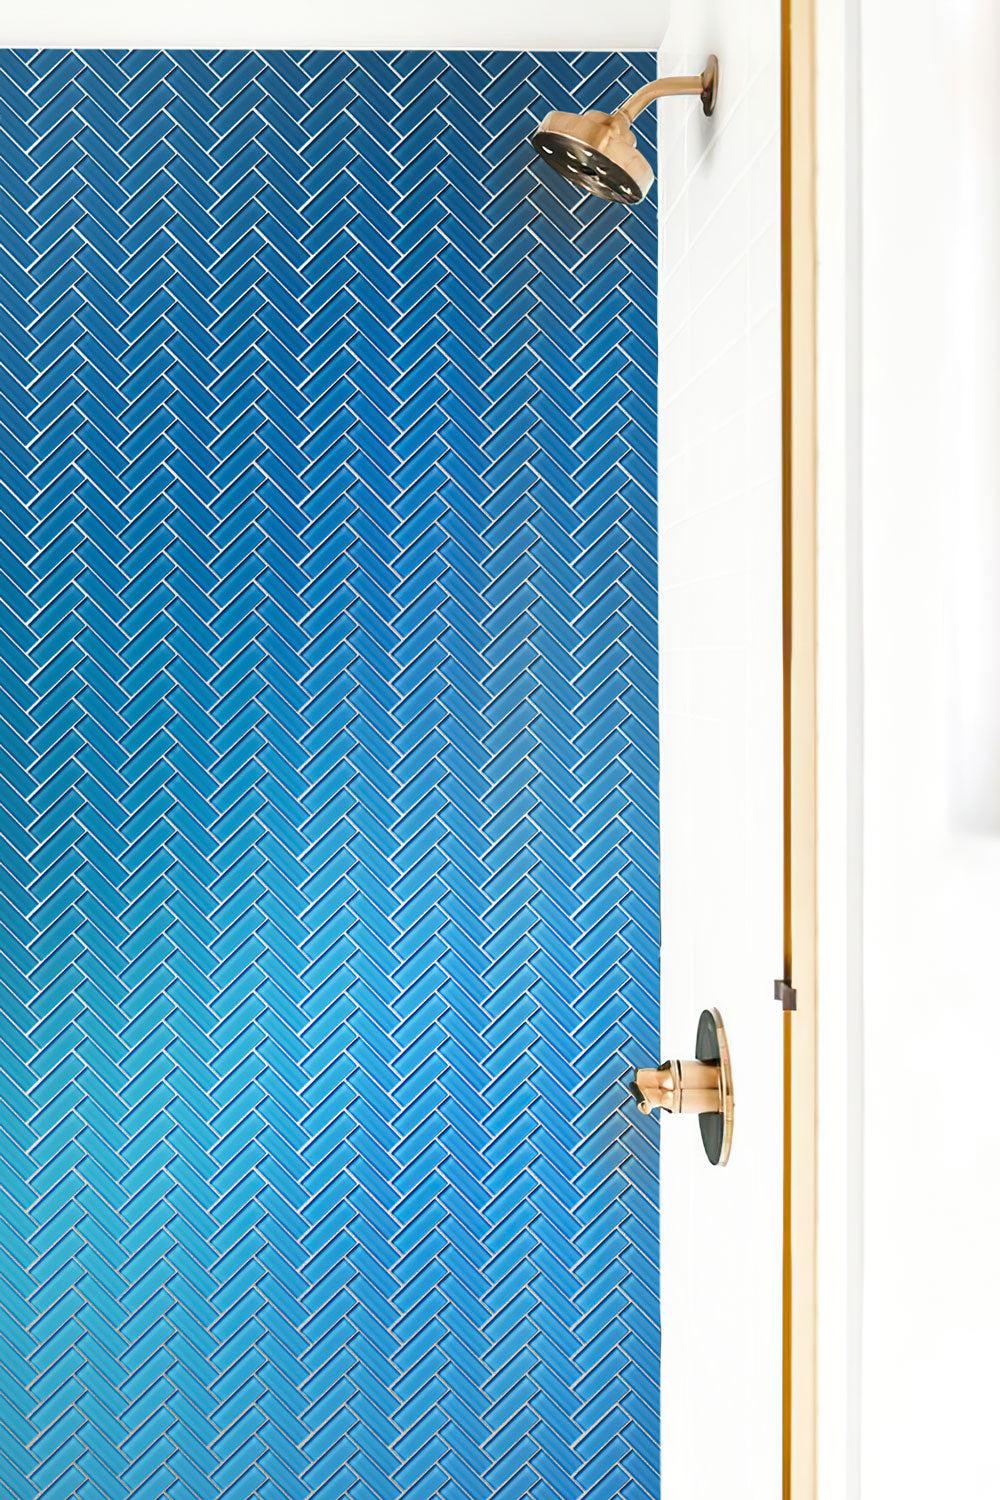 Sky Blue Herringbone Glass Tile shower backsplash